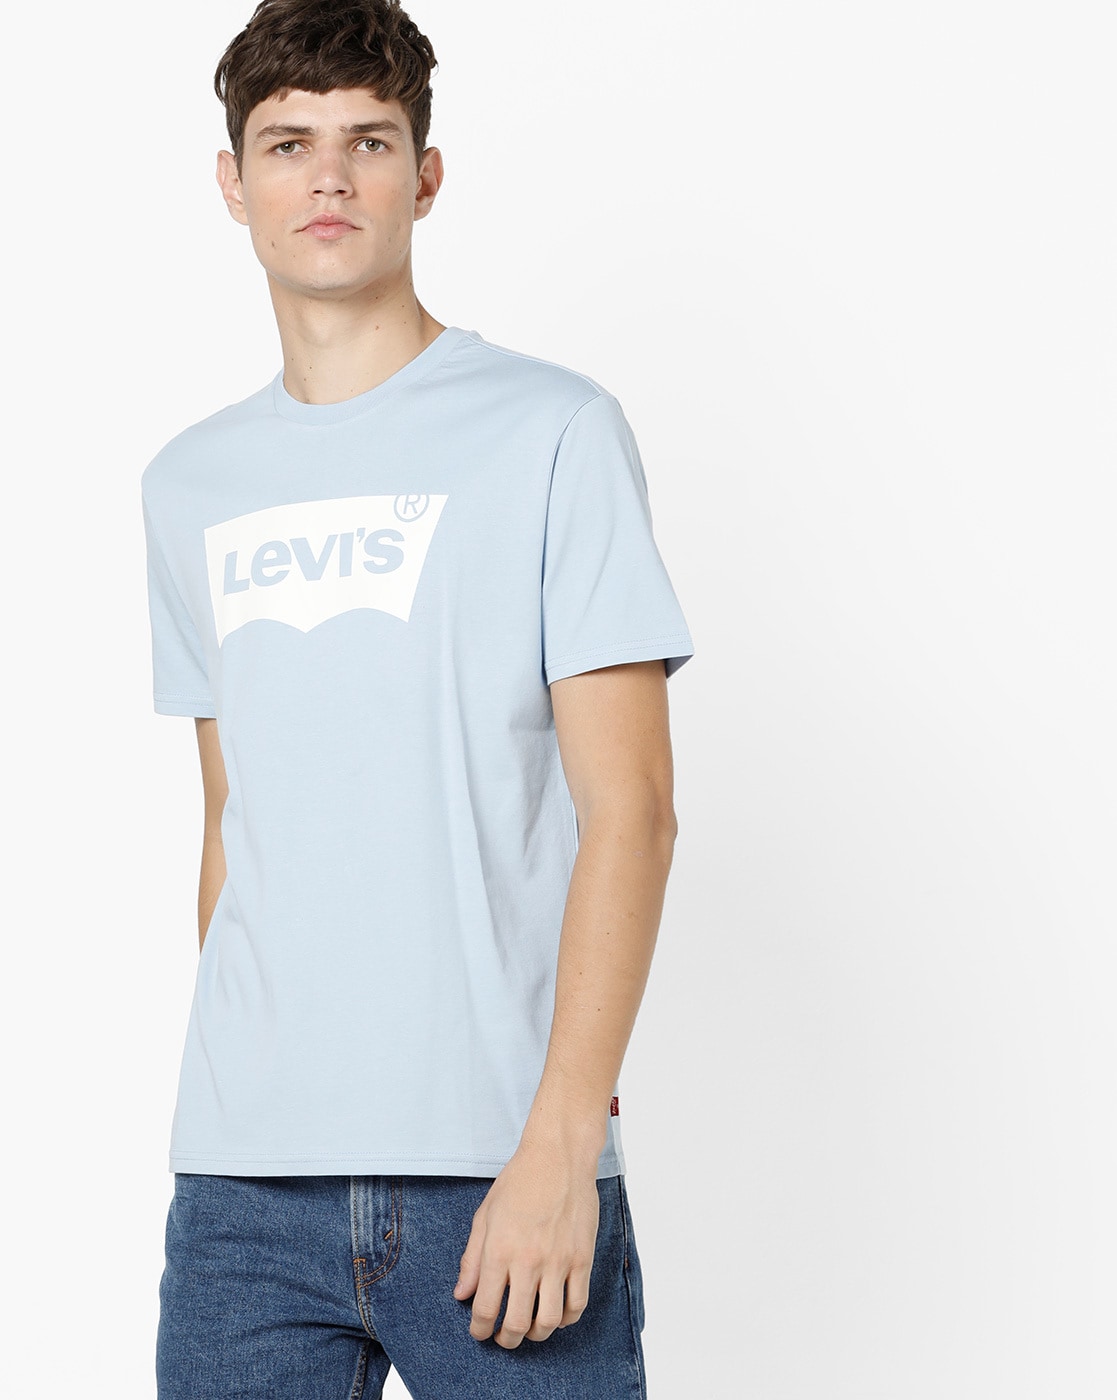 levis t shirt blue